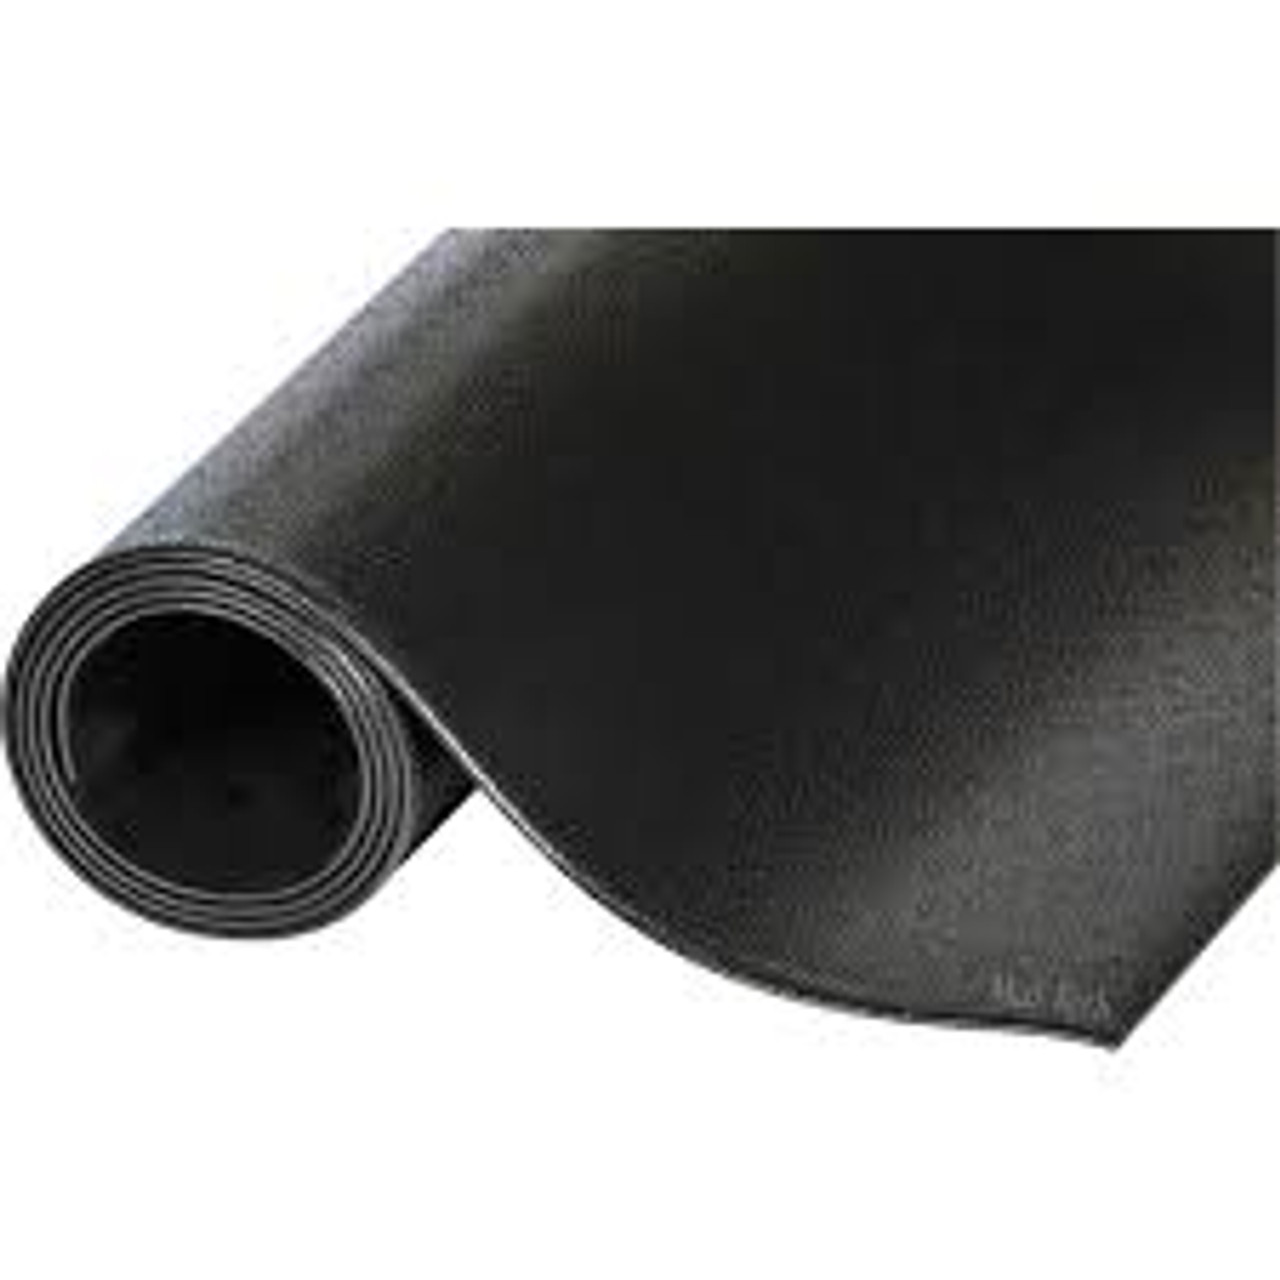 Tapis de protection Pro-TektMC pour couloir, dimensions 3' x 60' x 1/8", couleur noir